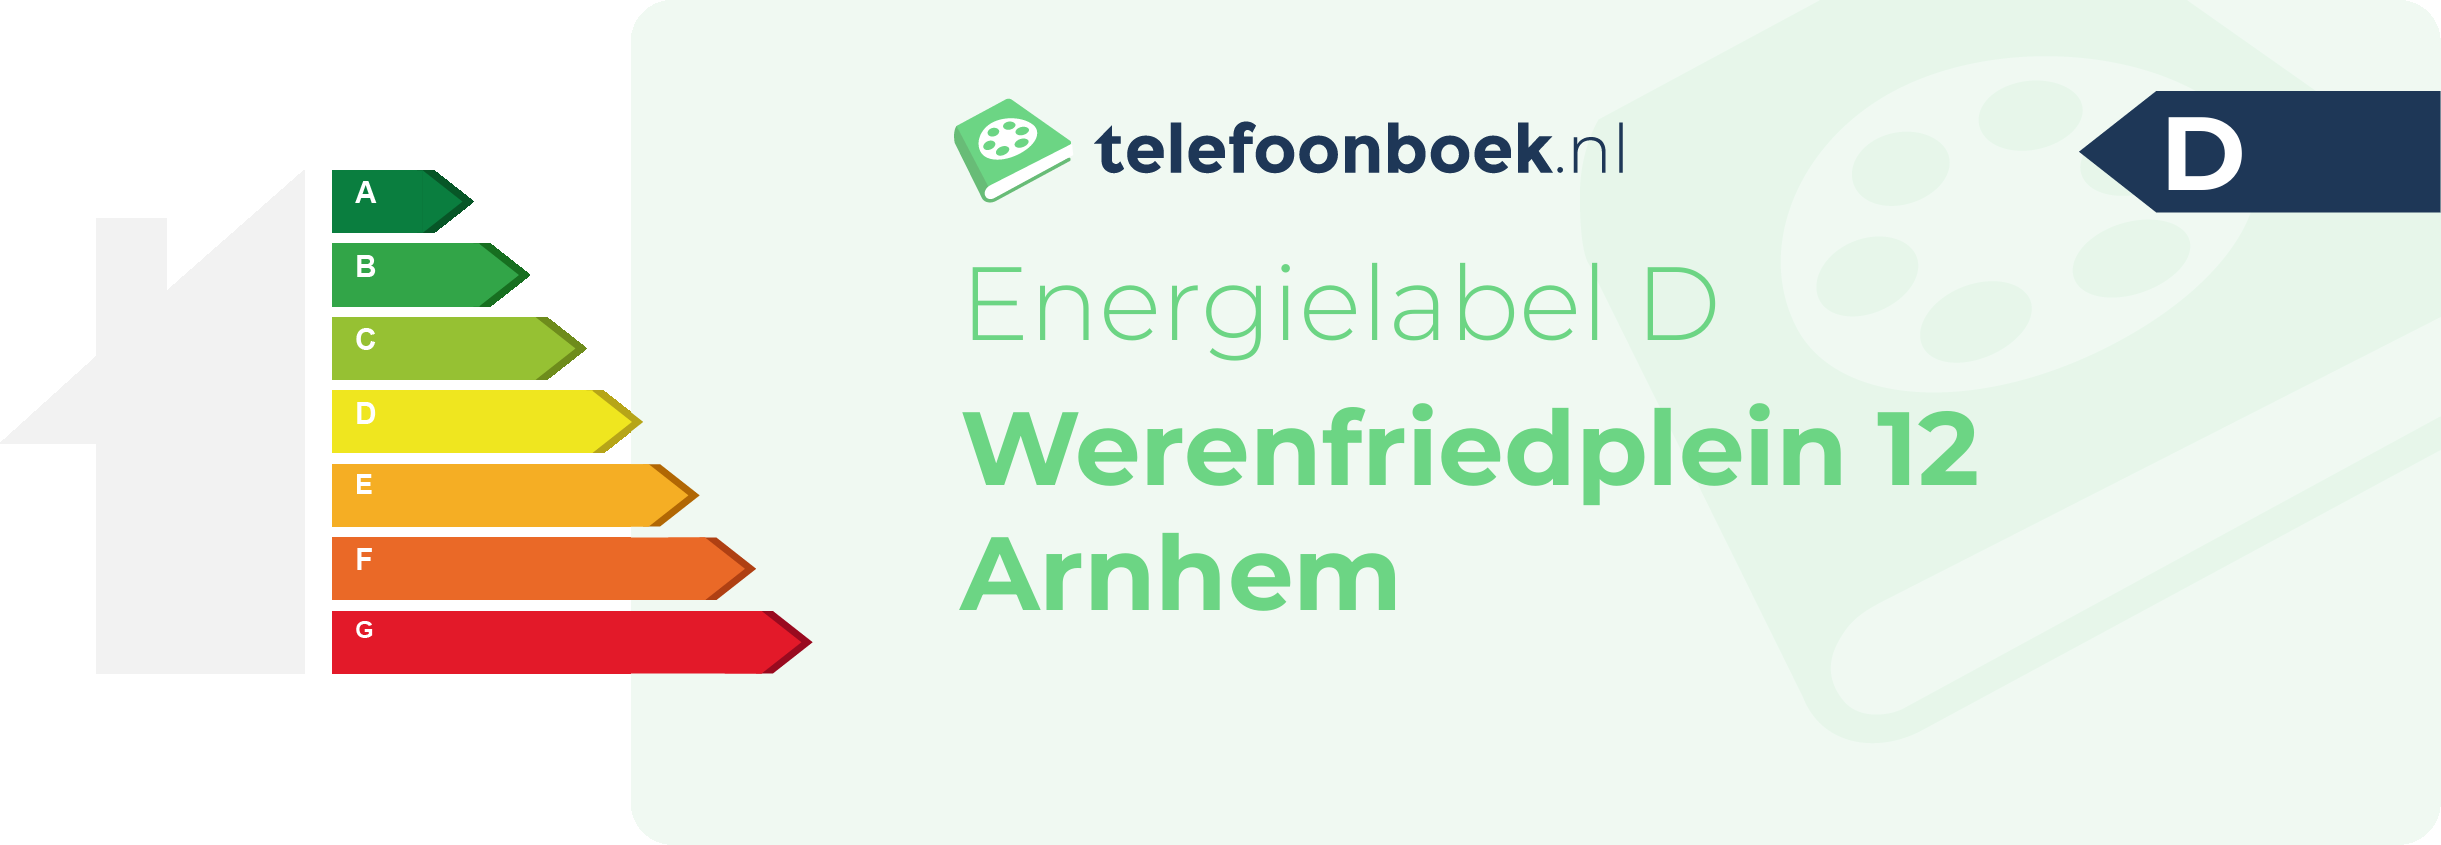 Energielabel Werenfriedplein 12 Arnhem